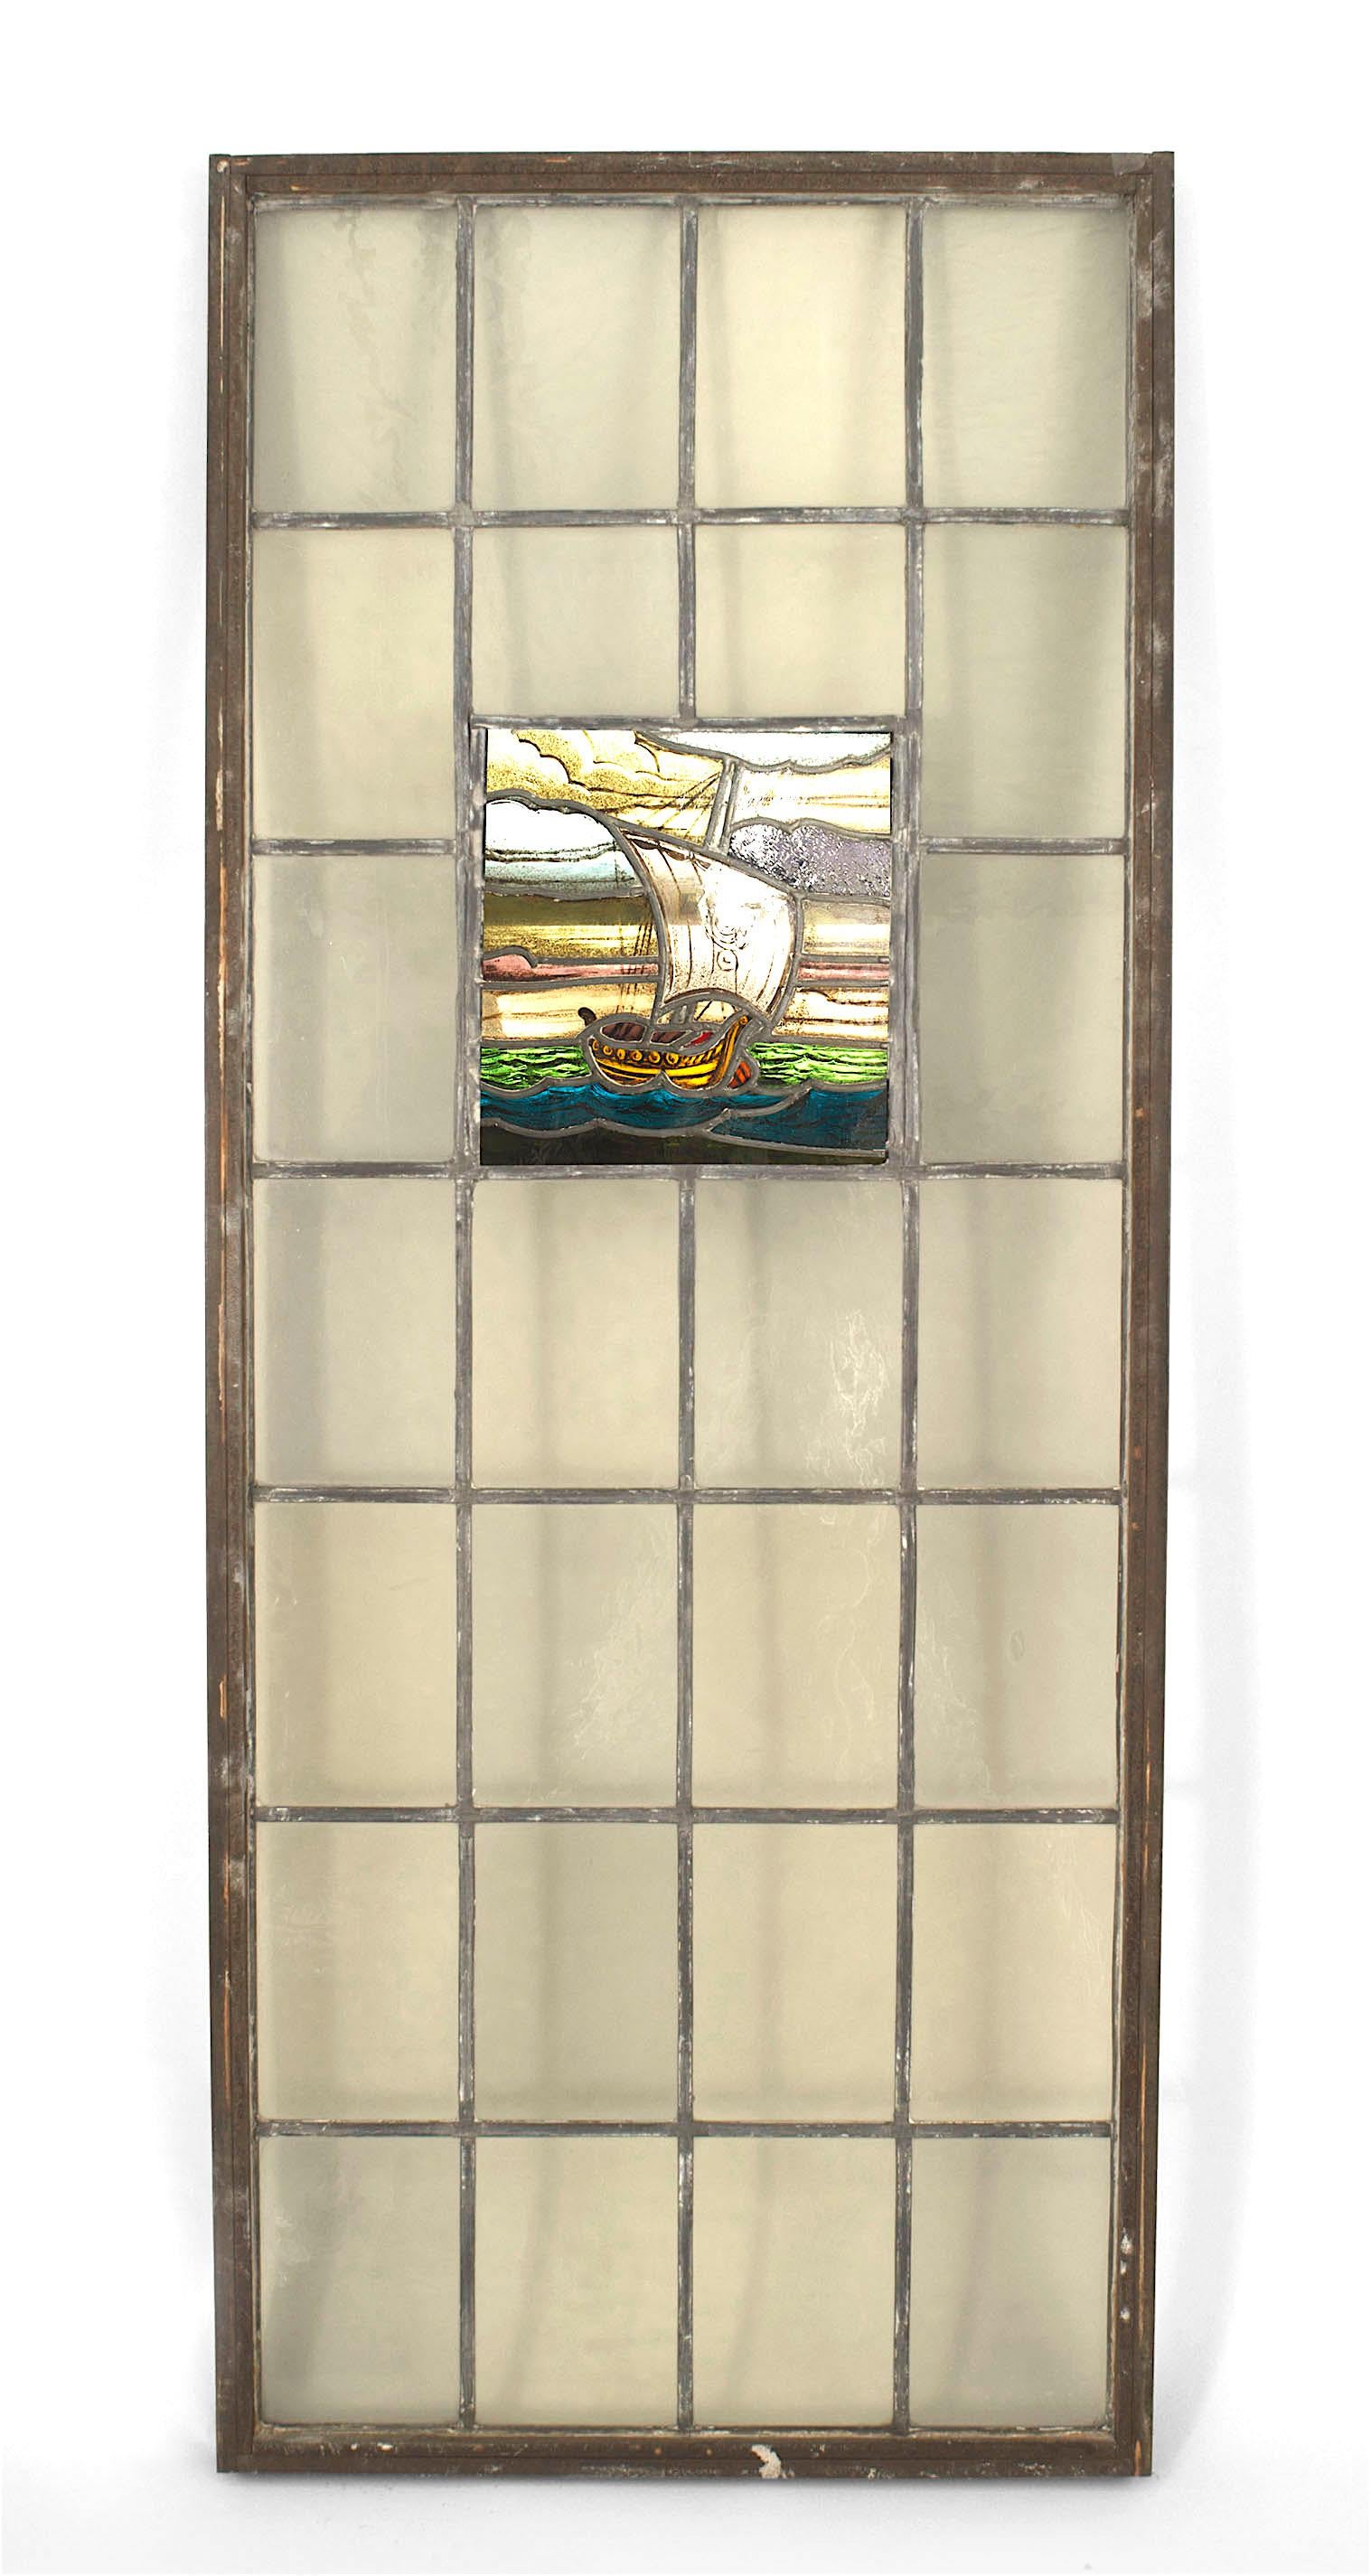 English Arts & Crafts Vitrail et fenêtre plombée représentant un voilier viking dans une grille de panneaux transparents.
